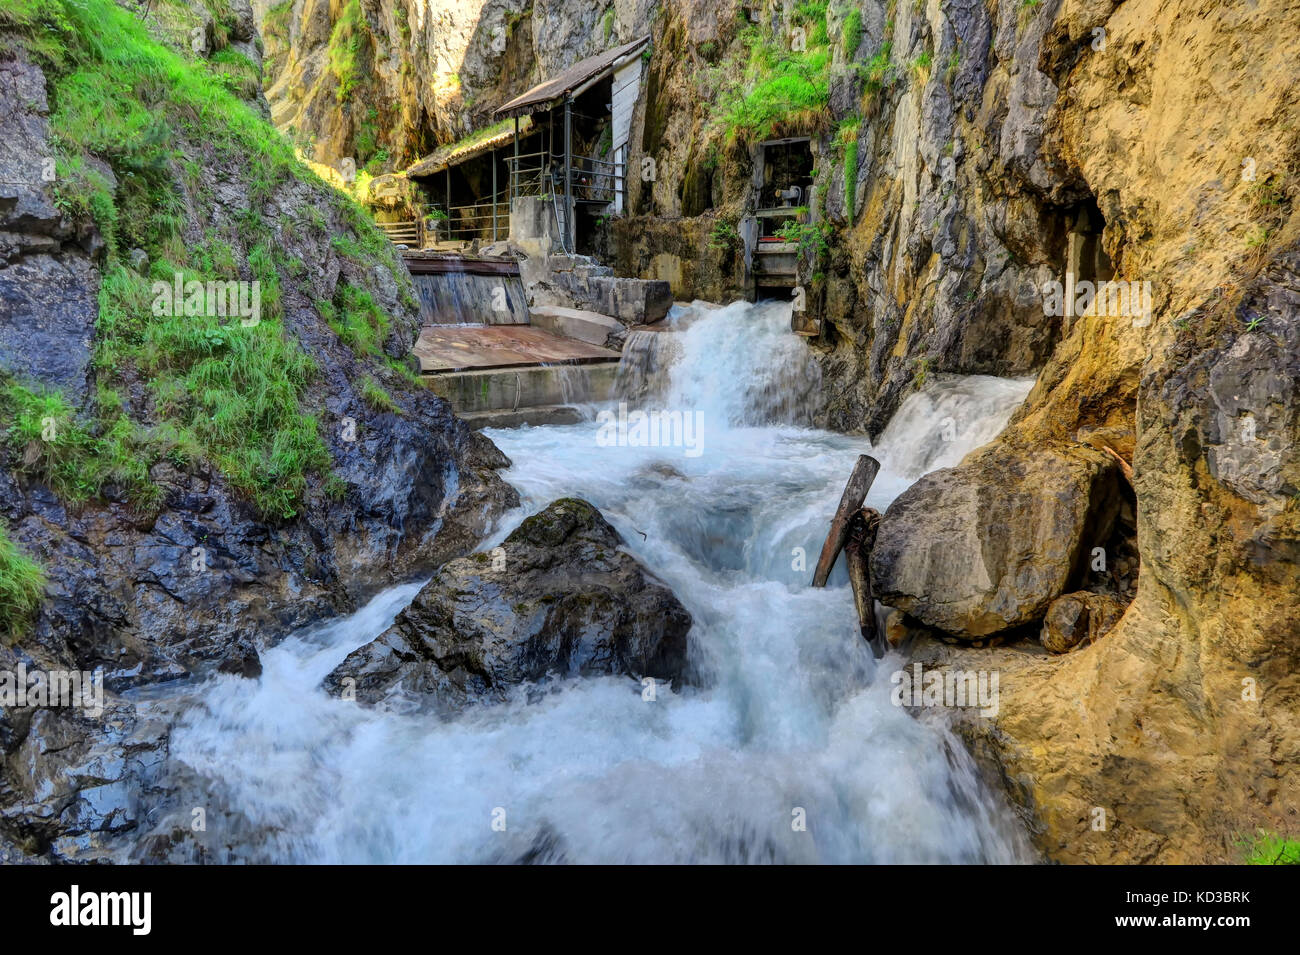 Cascata di Zammer Lochputz e centrale idroelettrica, famosa per la ninfa mitologica Foto Stock